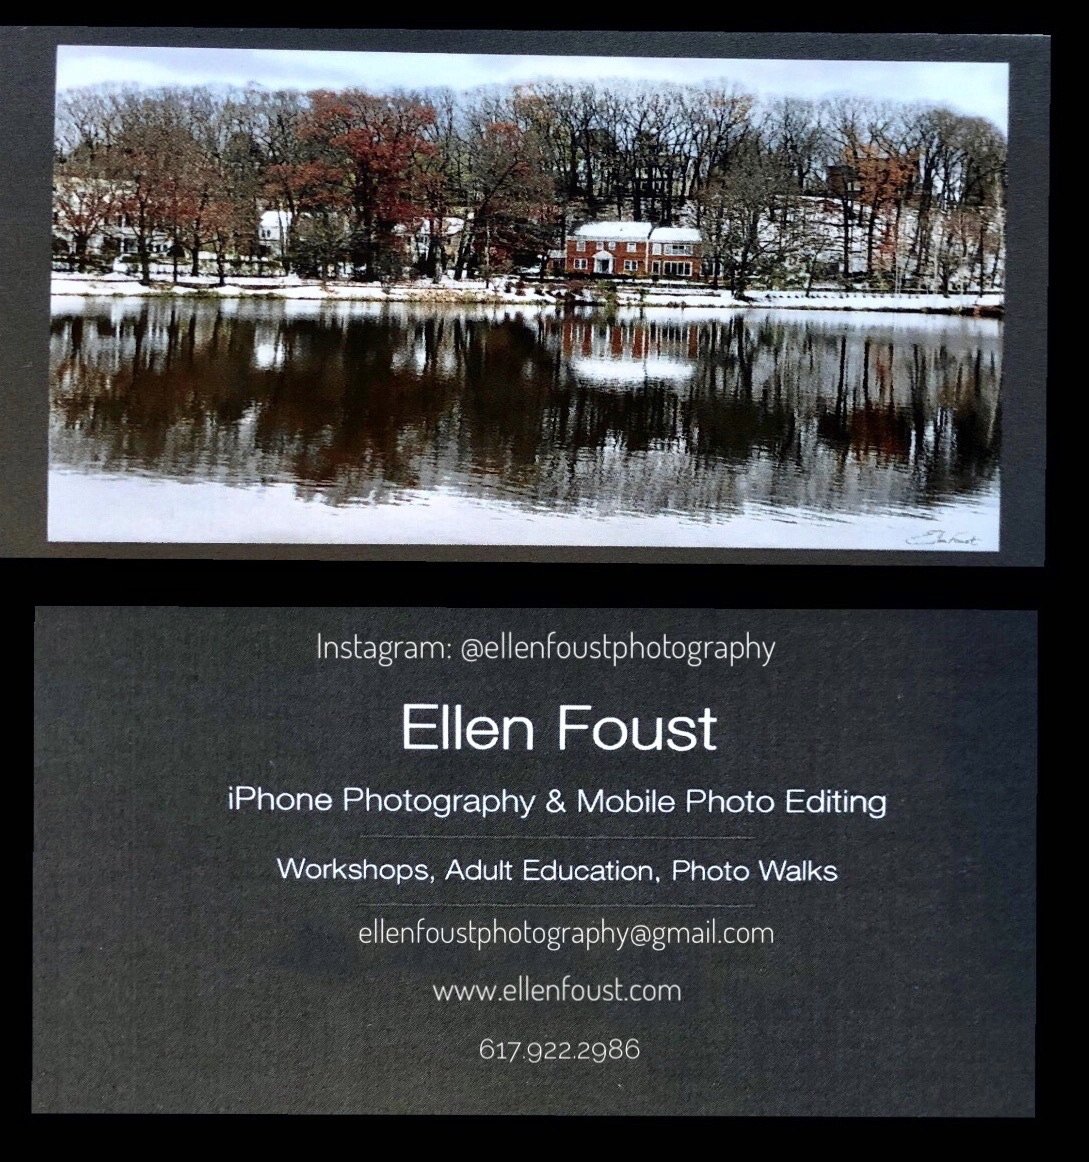  Business card, Ellen Foust 